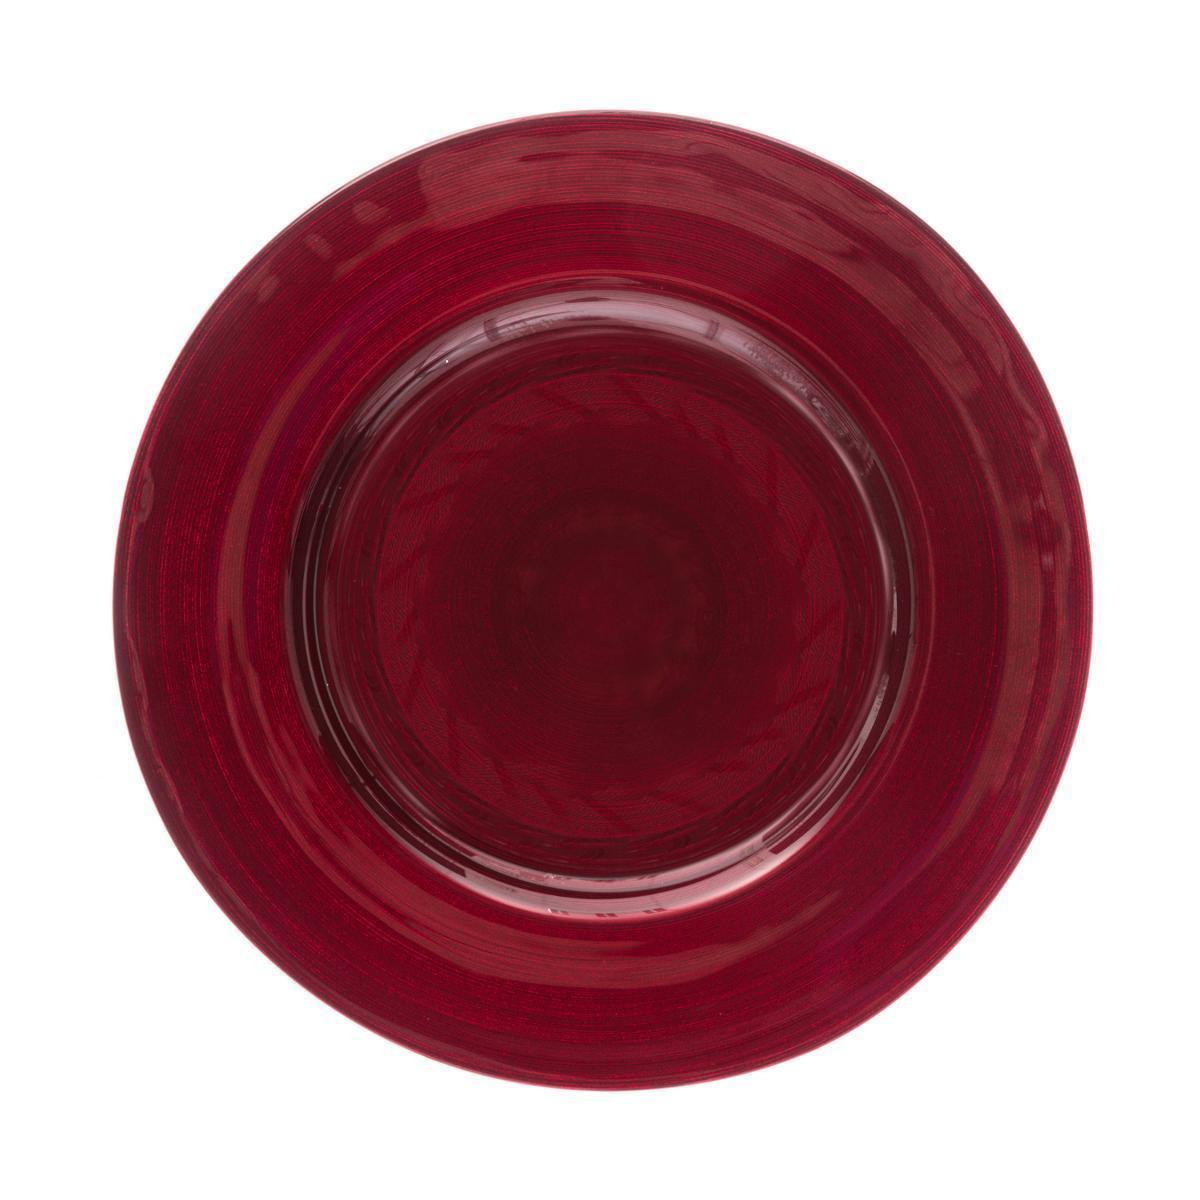 Assiette plate Jem - ø 28 cm - Rouge